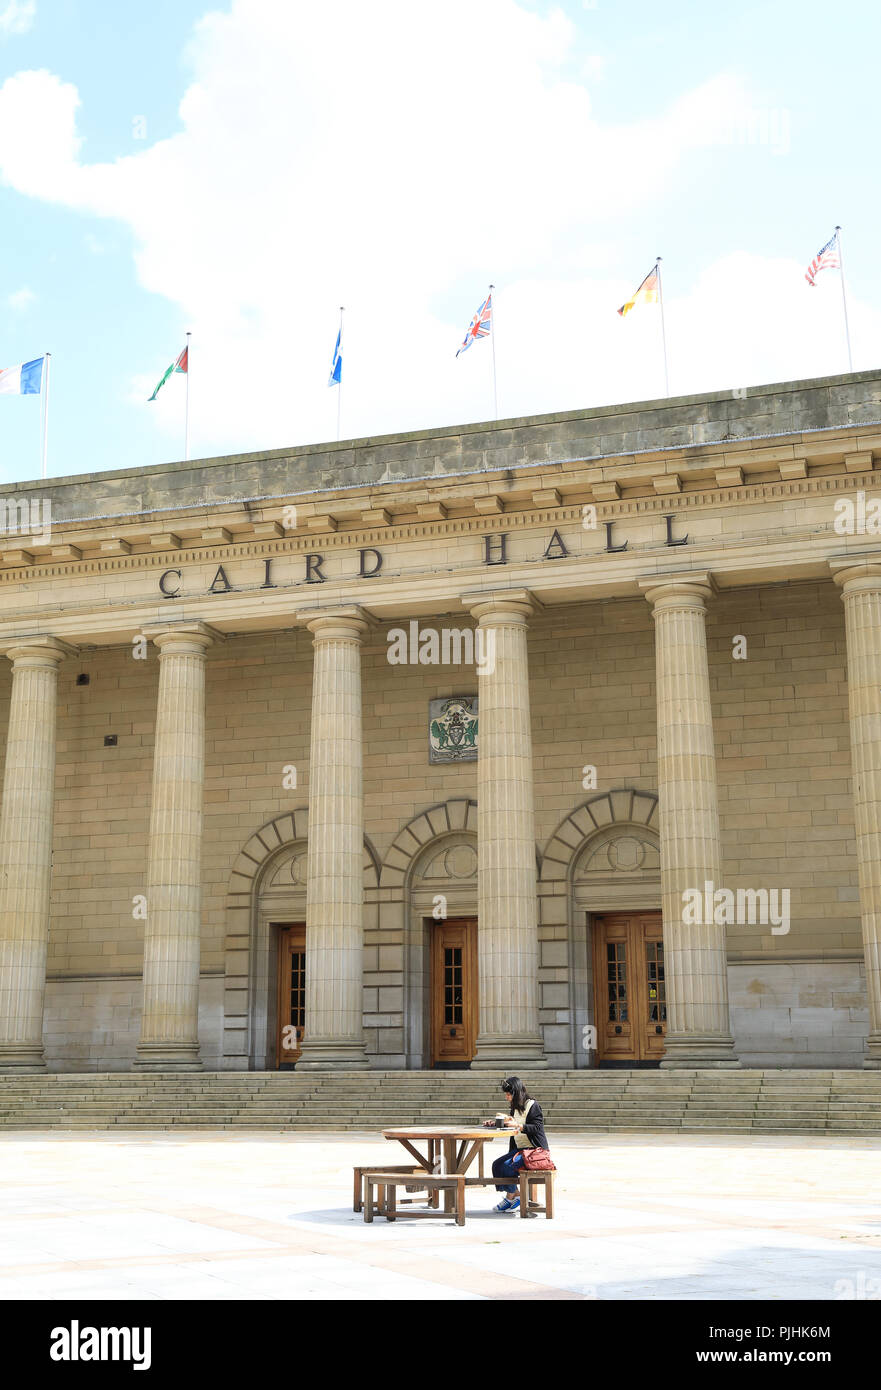 Caird Hall, ein Konzert Auditorium am City Square im Zentrum von Dundee, auf Tayside, in Schottland, Großbritannien Stockfoto